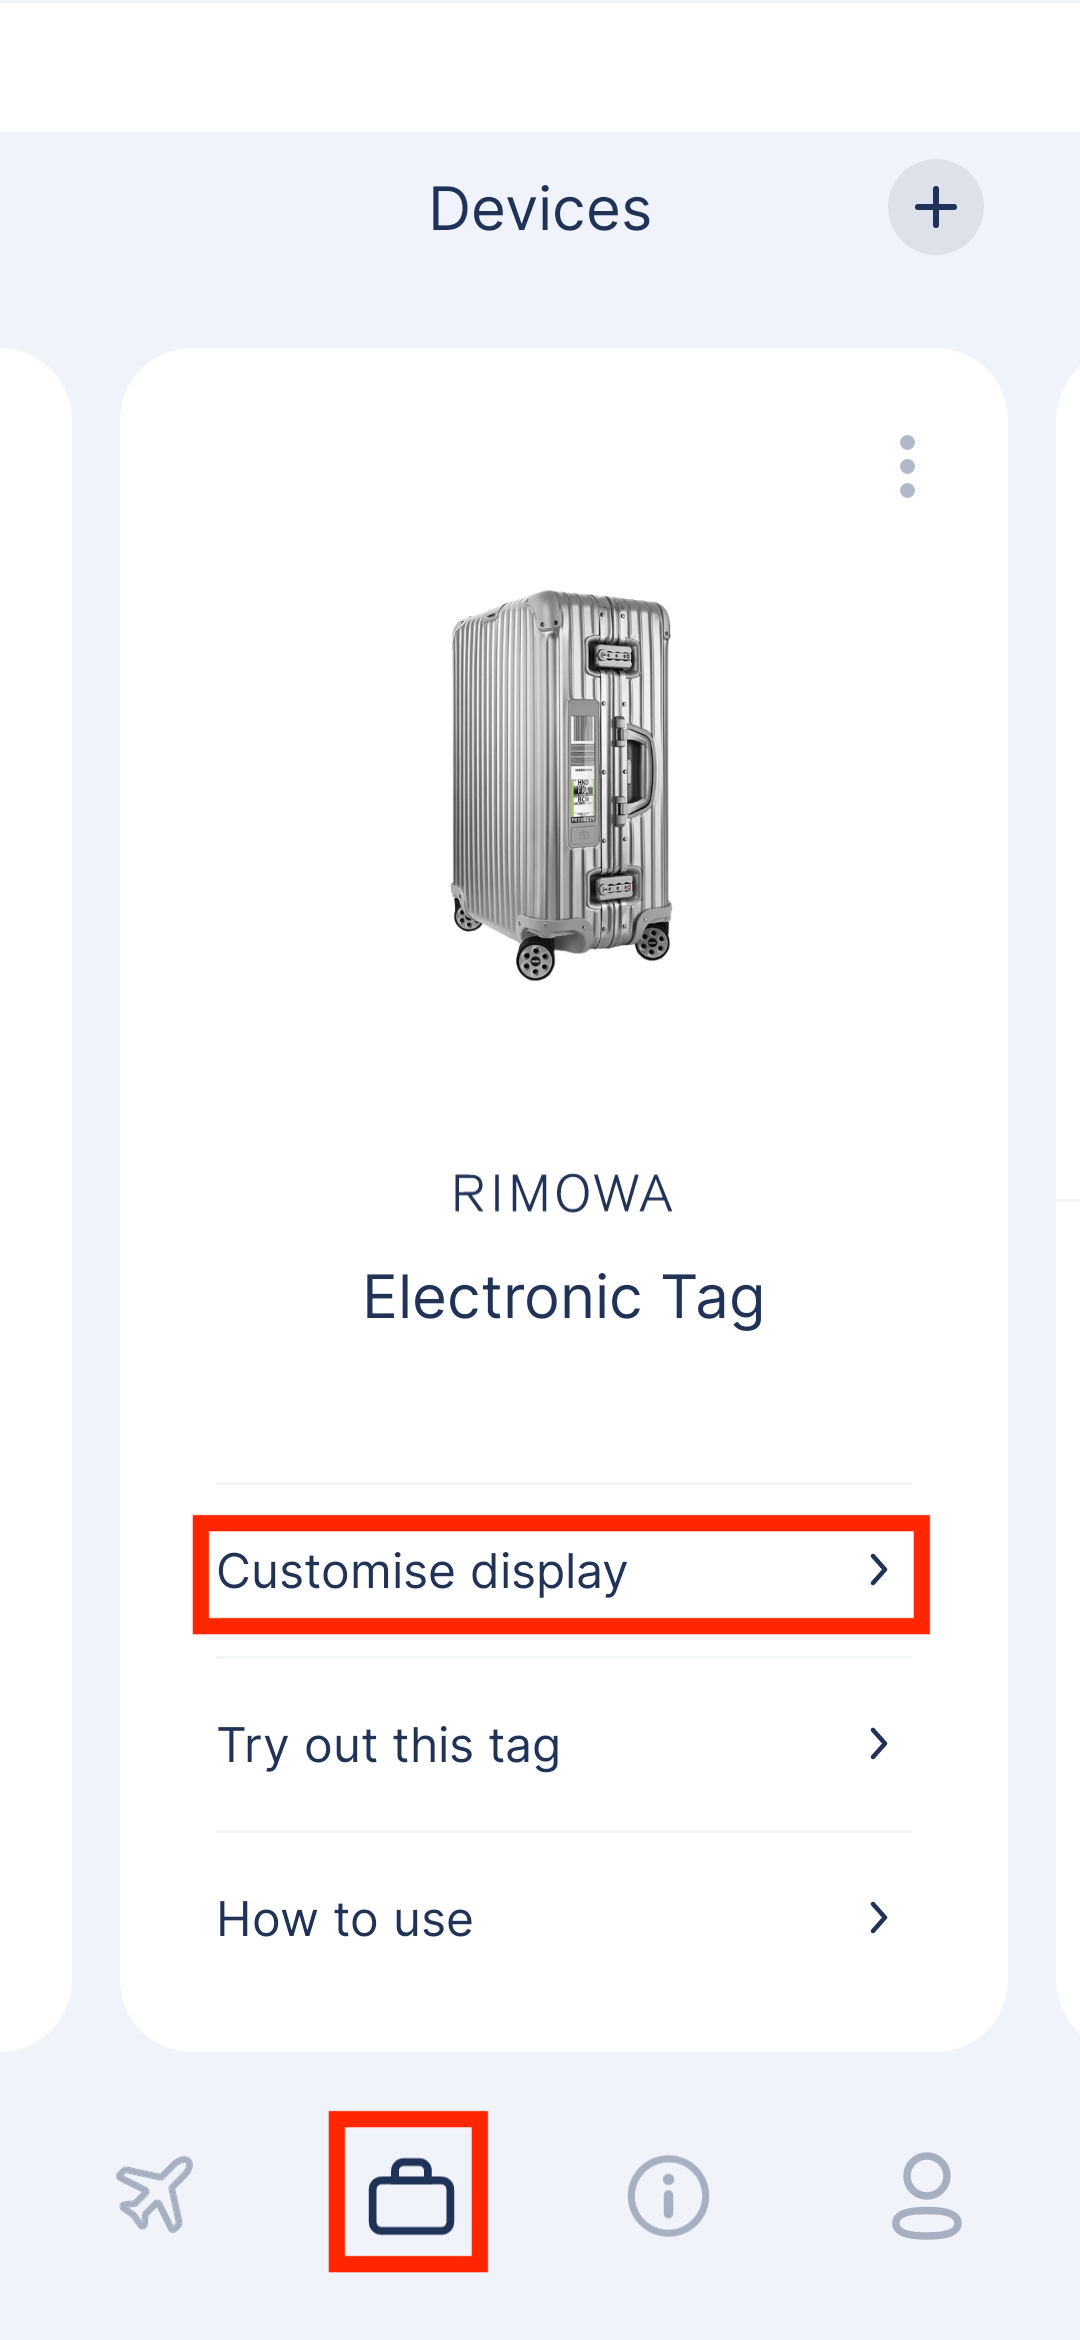 RIMOWA_image_customization.png